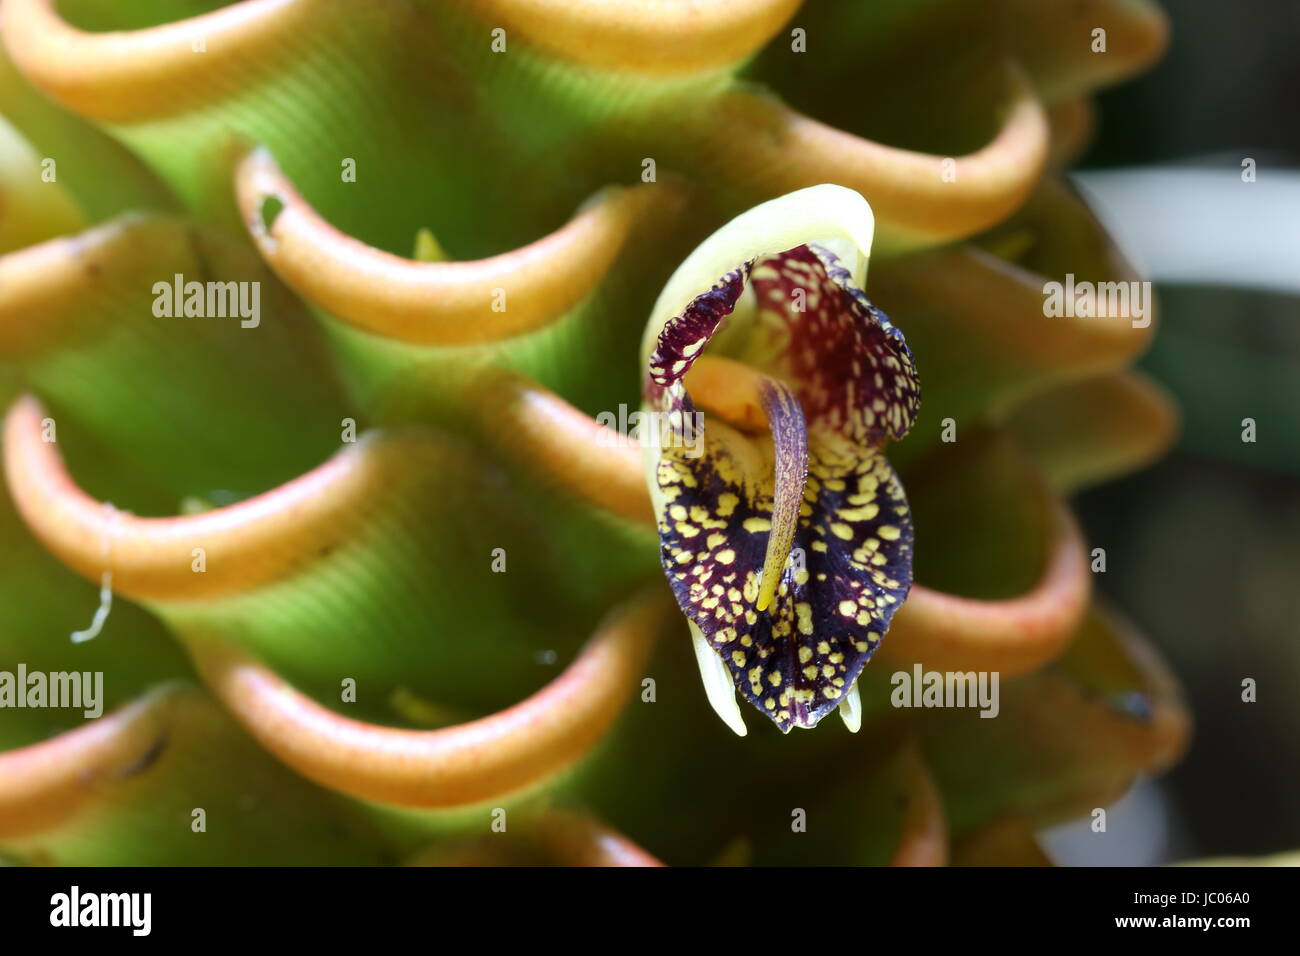 Gros plan de la fleur du zingiber spectabile ou gingembre ruche d'or trouvés dans la jungle tropicale Banque D'Images